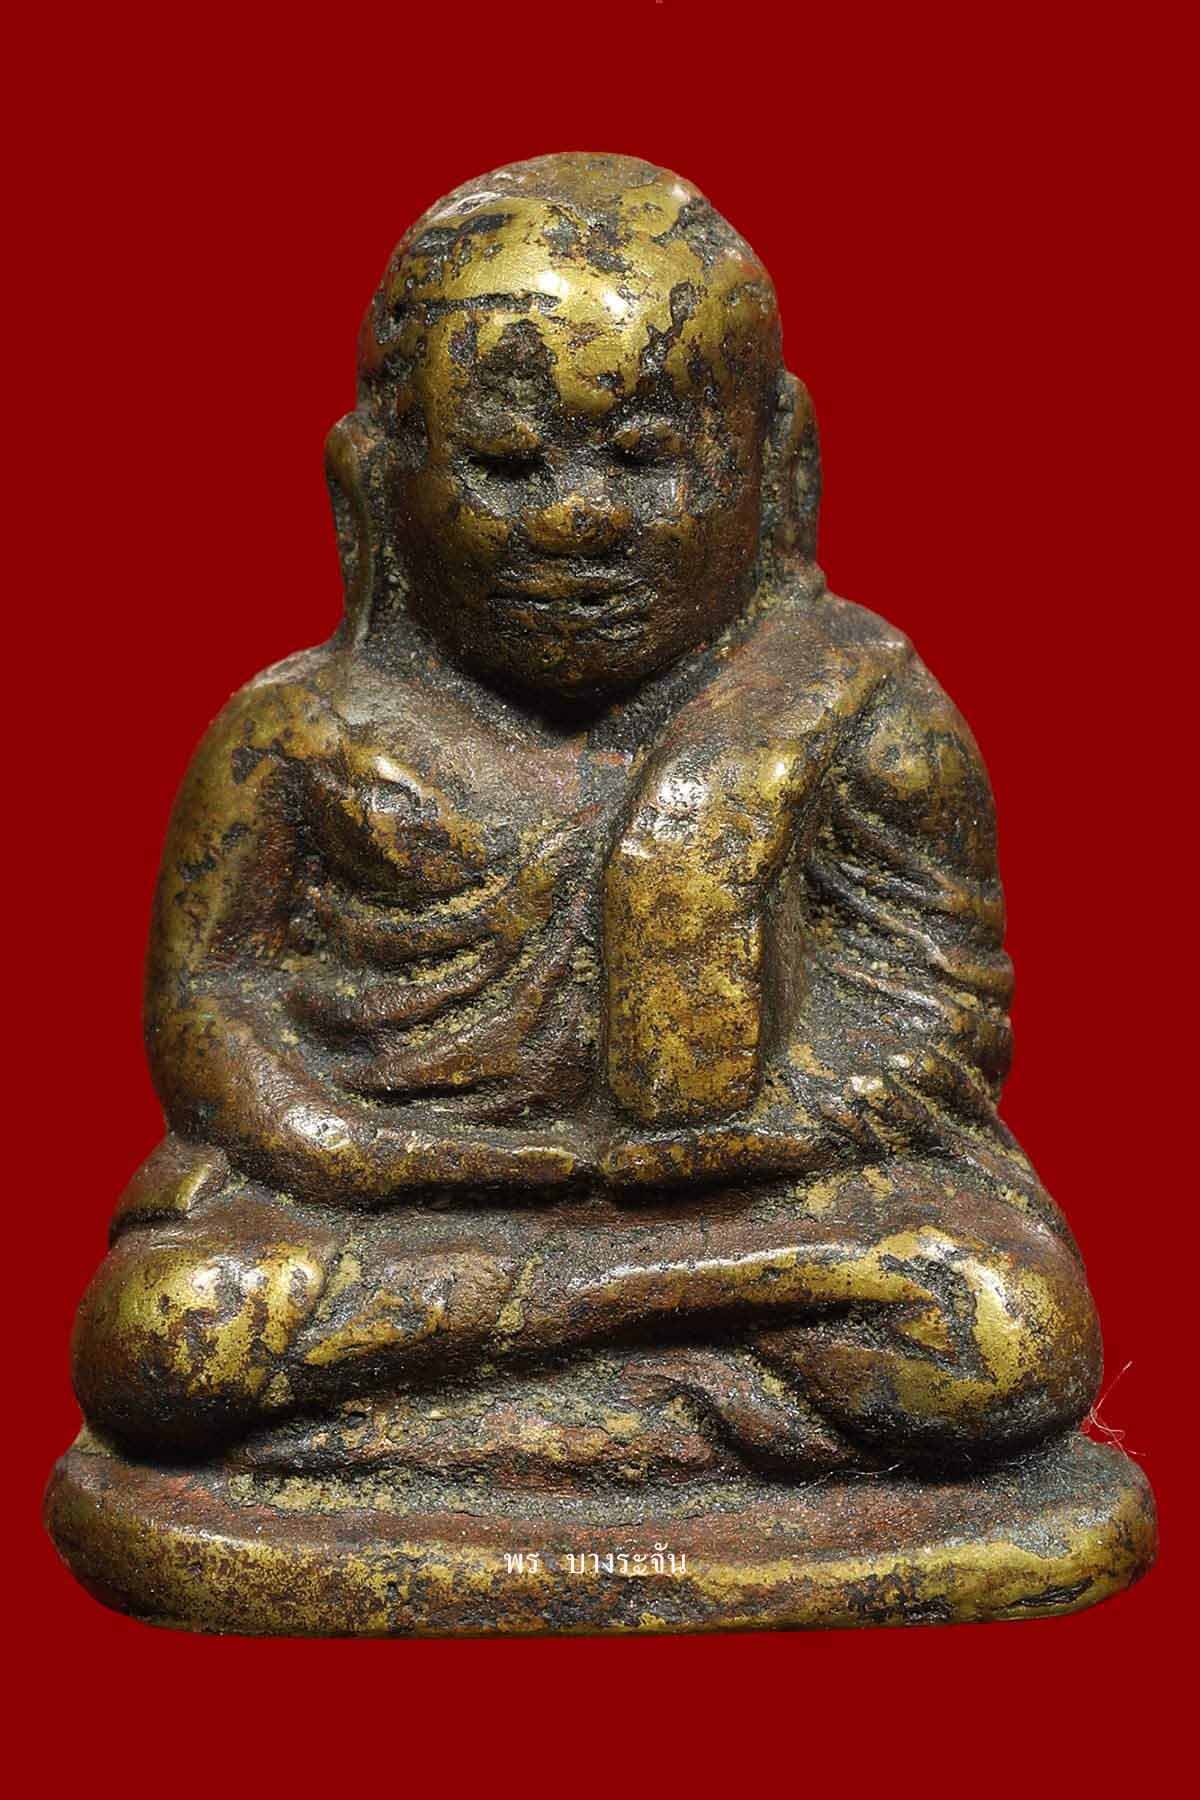 รูปหล่อหลวงพ่อเงินบางคลาน พิมพ์นิยม phra lp ngern statue wat bangklan antique talisman old thai buddha amulet 銮菩银 财佛, 鑾菩銀 大師